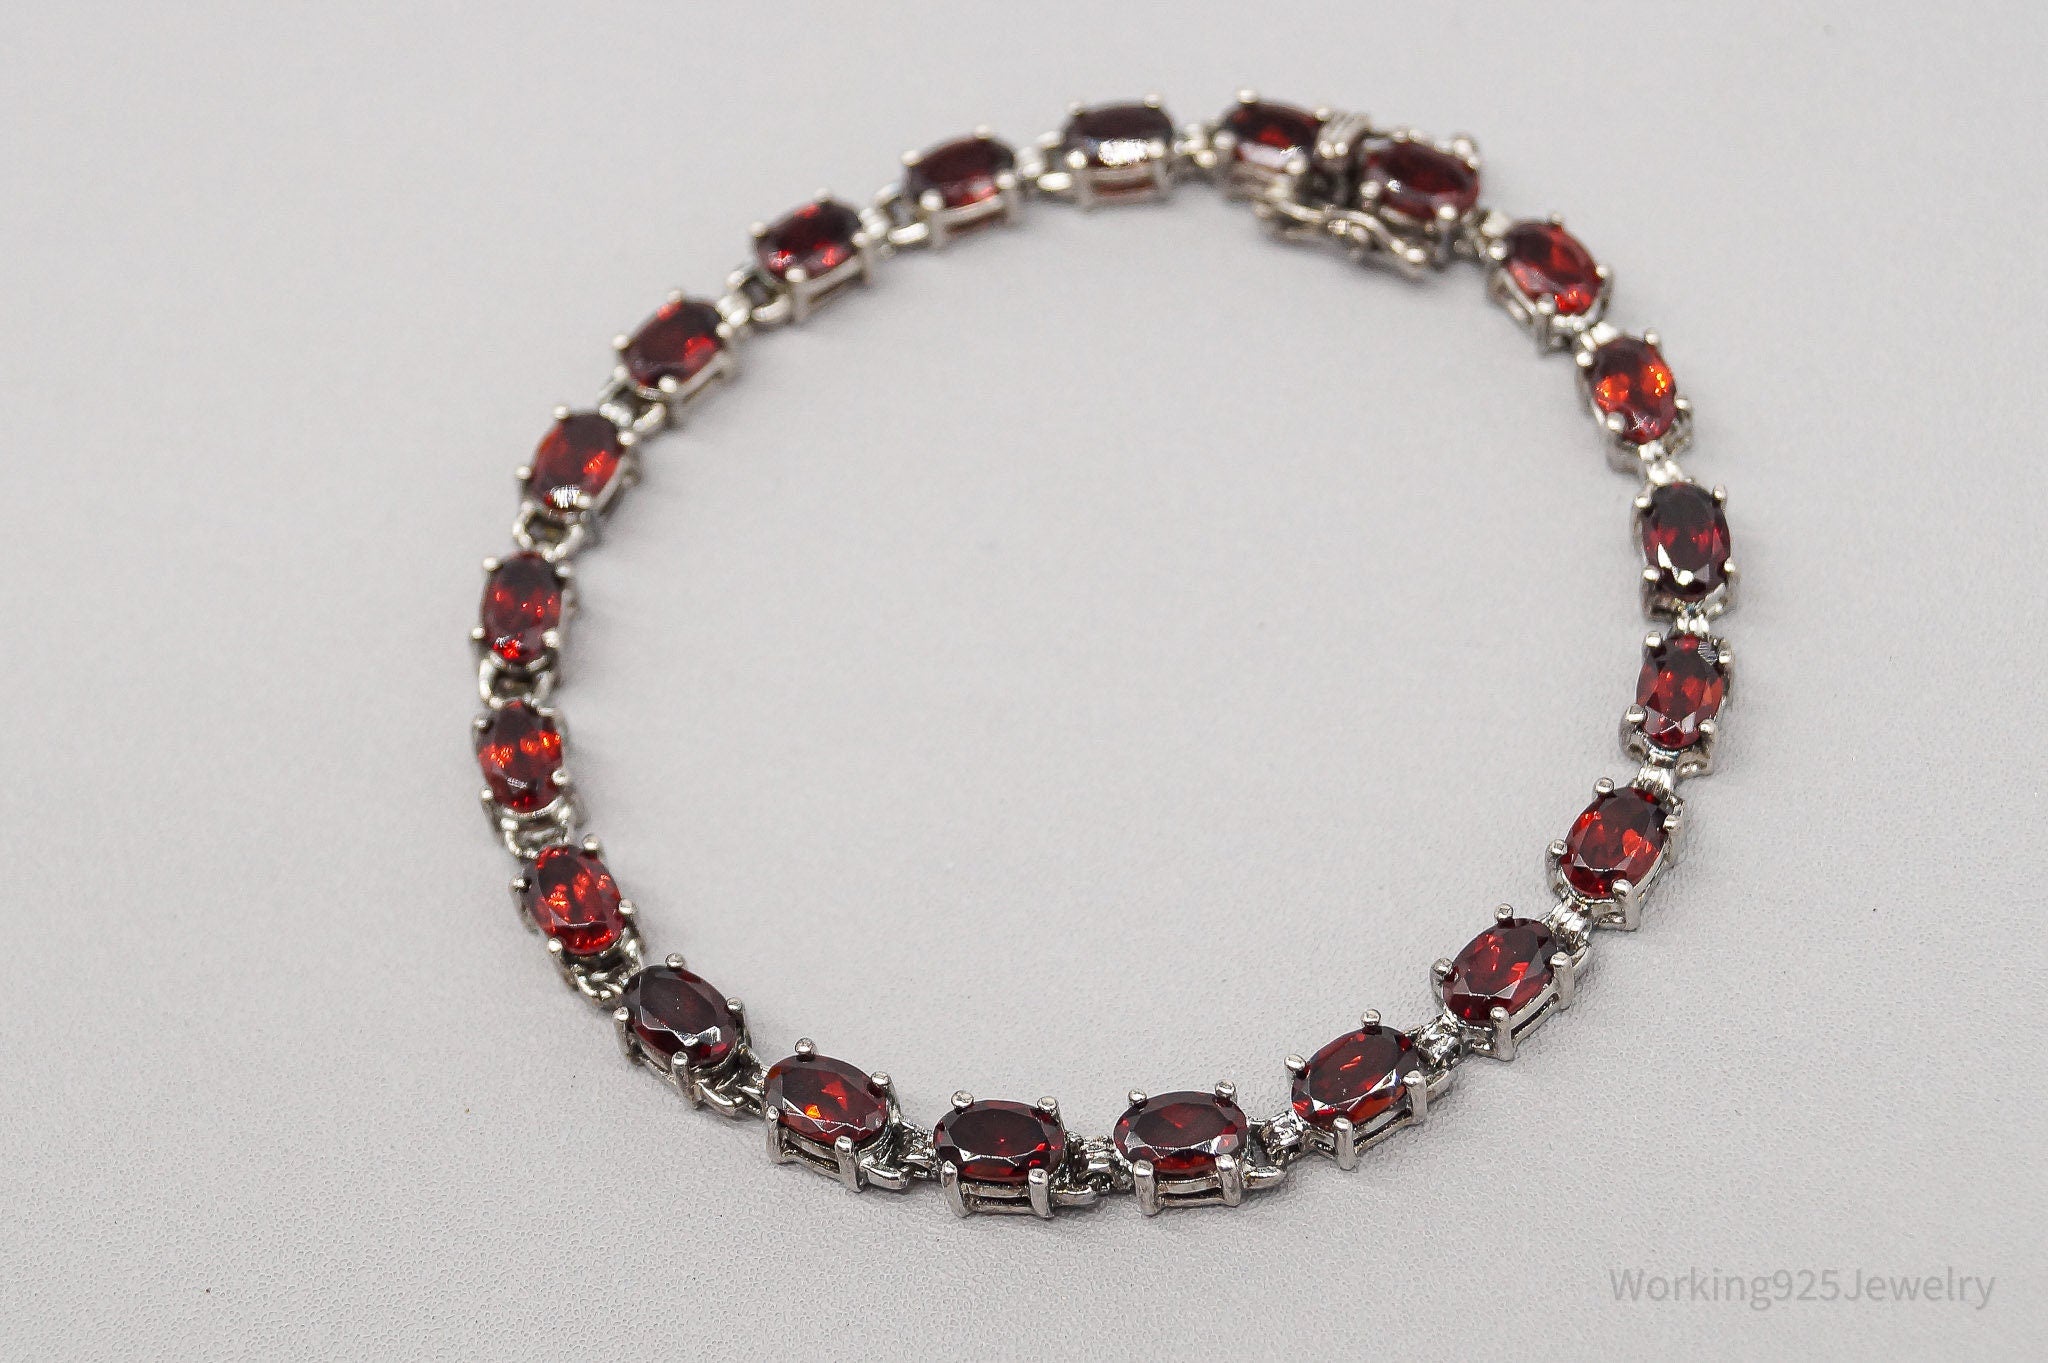 Vintage Red Garnet Sterling Silver Bracelet - 7 3/8"